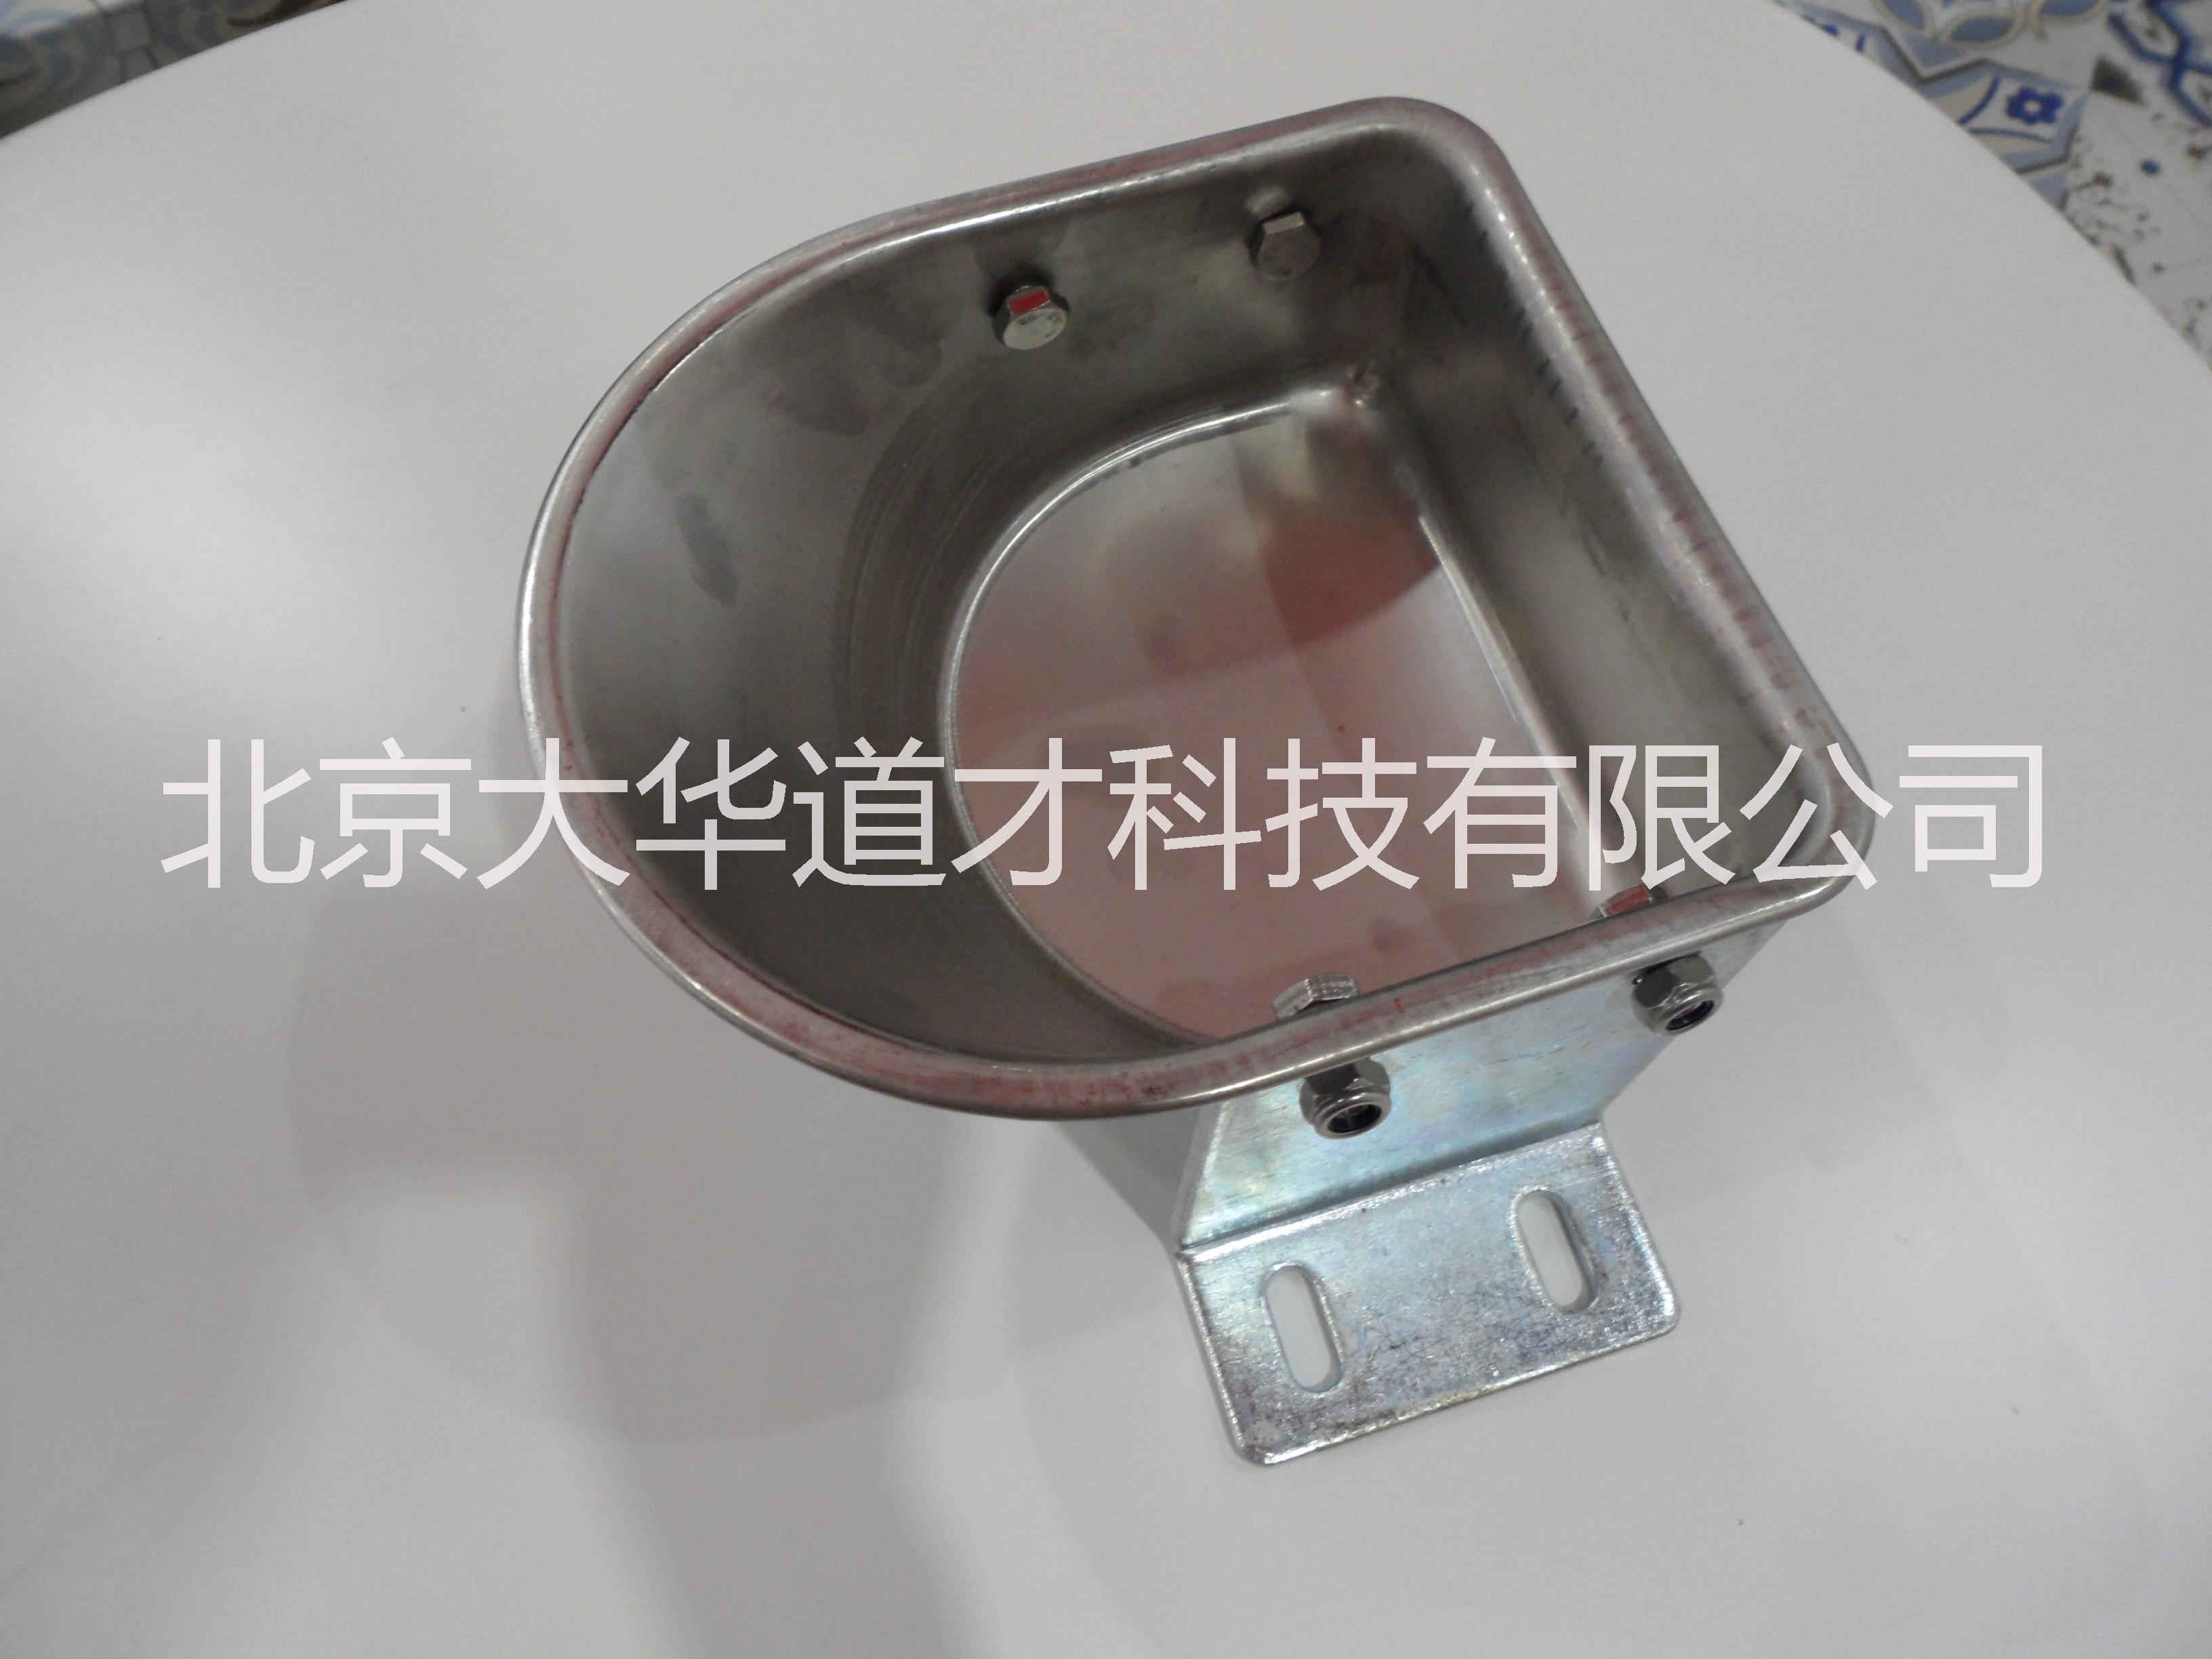 供应猪/牛/羊不锈钢饮水碗 饮水槽 304食品级饮水碗,水位控制器专用,牛饮水槽,猪用饮水器